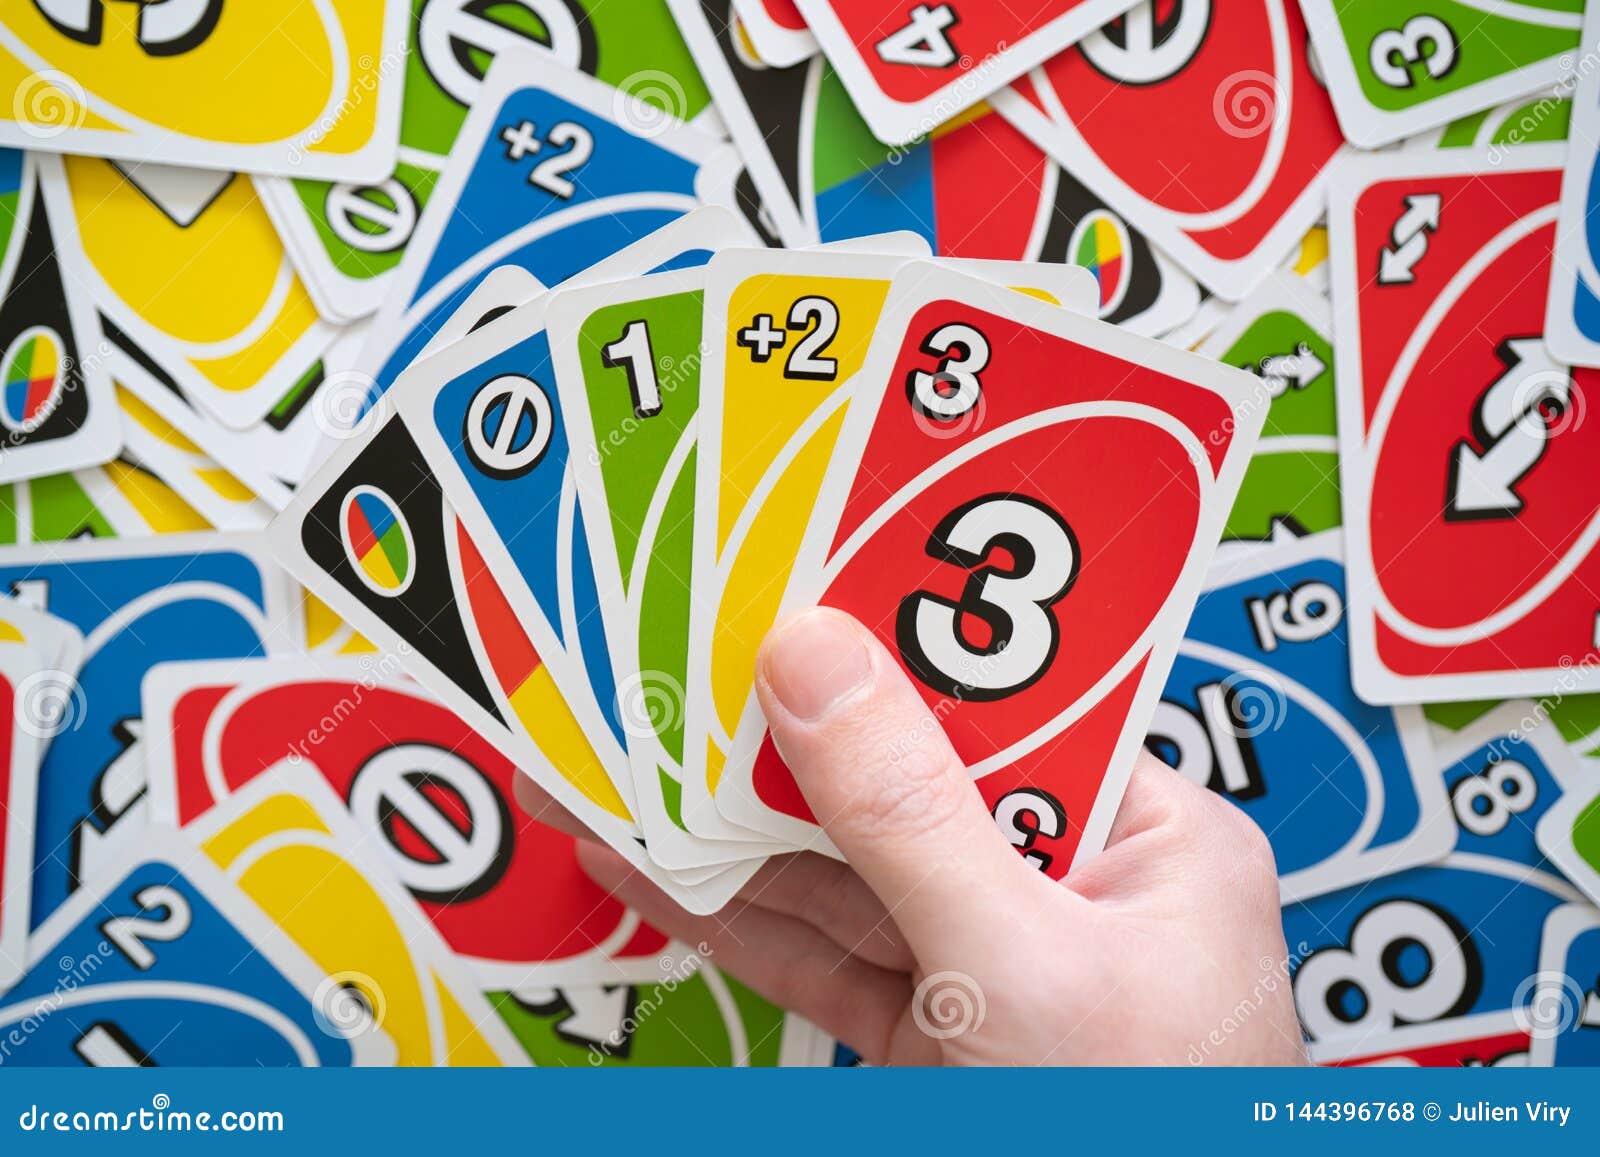 Tìm hiểu game bài thú vị Uno Game Cards với rất nhiều trò chơi khác nhau và tình huống đa dạng. Hãy xem hình ảnh đẹp mắt để khám phá thế giới của Uno Game Cards! (Discover the exciting card game Uno Game Cards with many different games and various situations. Check out the beautiful image to explore the world of Uno Game Cards!)